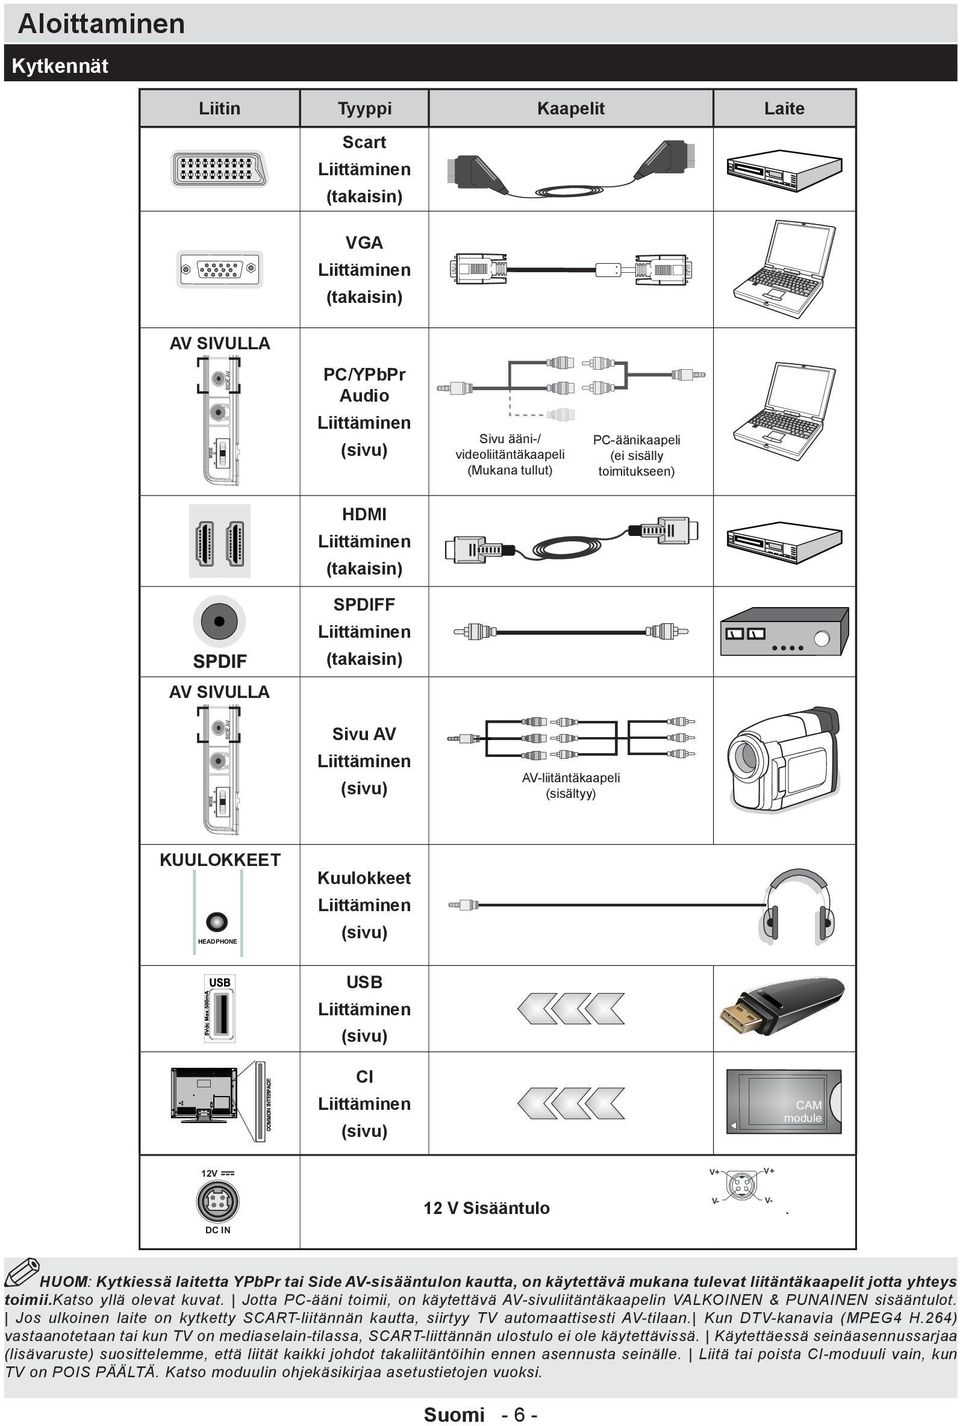 Kuulokkeet Liittäminen (sivu) USB Liittäminen (sivu) CI Liittäminen (sivu) V+ V+ 12 V Sisääntulo V- V-.